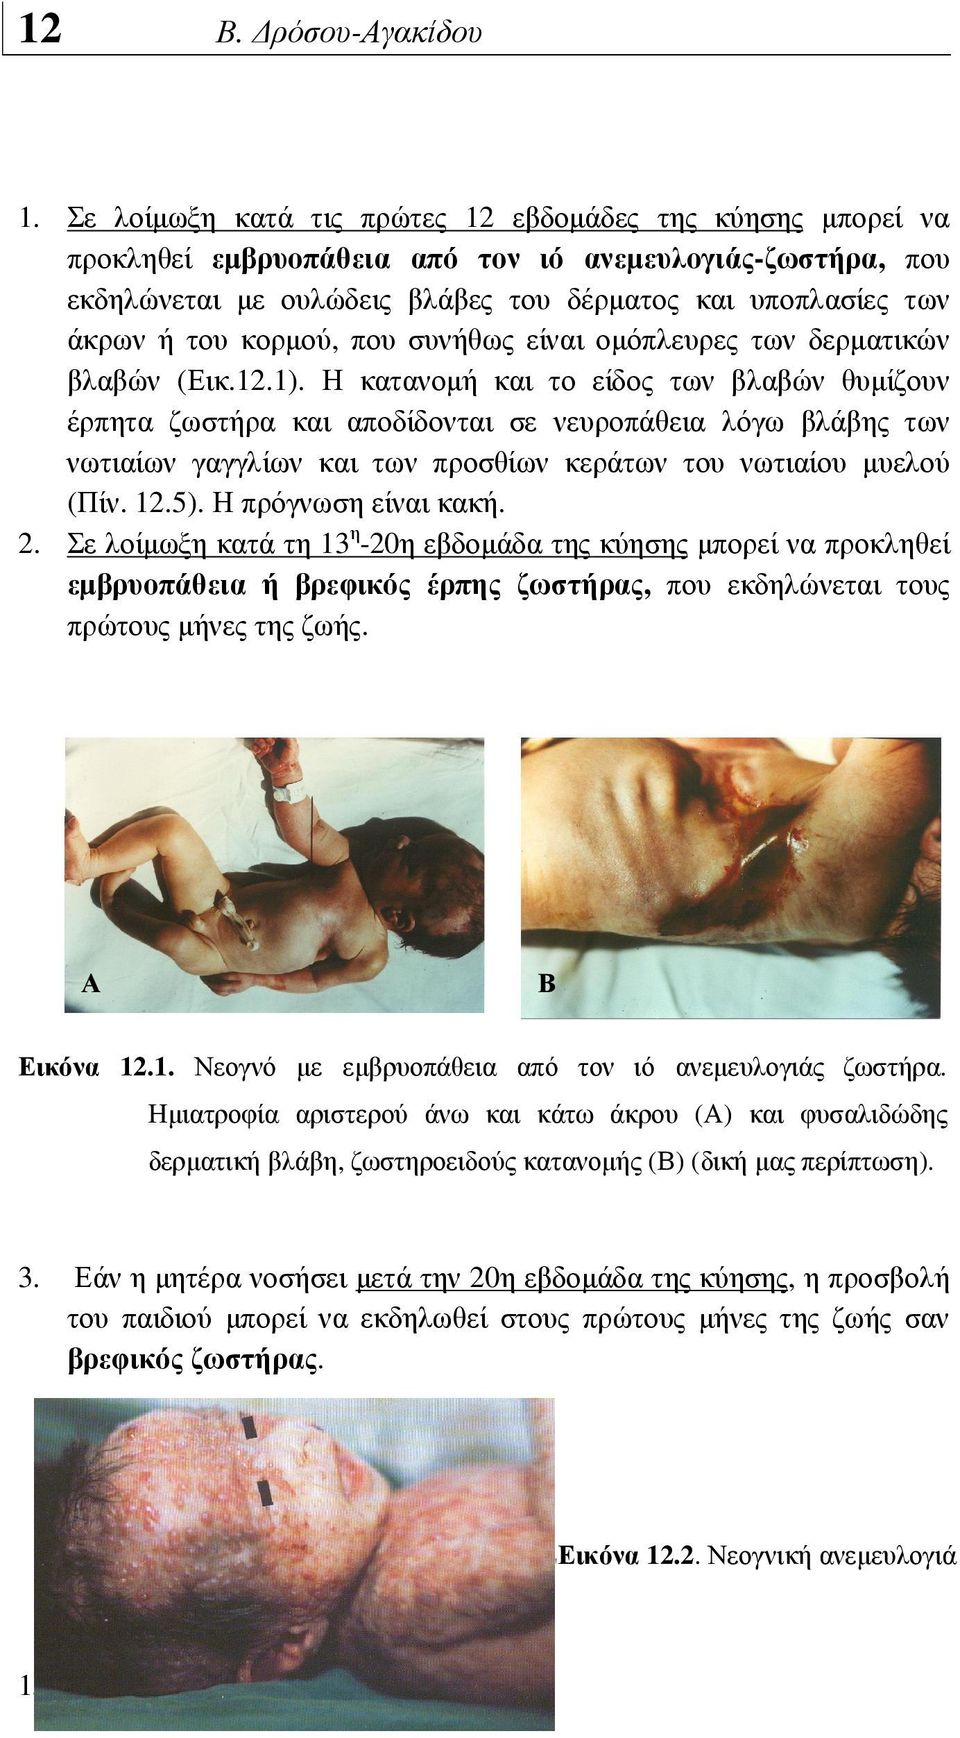 Η κατανοµή και το είδος των βλαβών θυµίζουν έρπητα ζωστήρα και αποδίδονται σε νευροπάθεια λόγω βλάβης των νωτιαίων γαγγλίων και των προσθίων κεράτων του νωτιαίου µυελού (Πίν. 12.5).